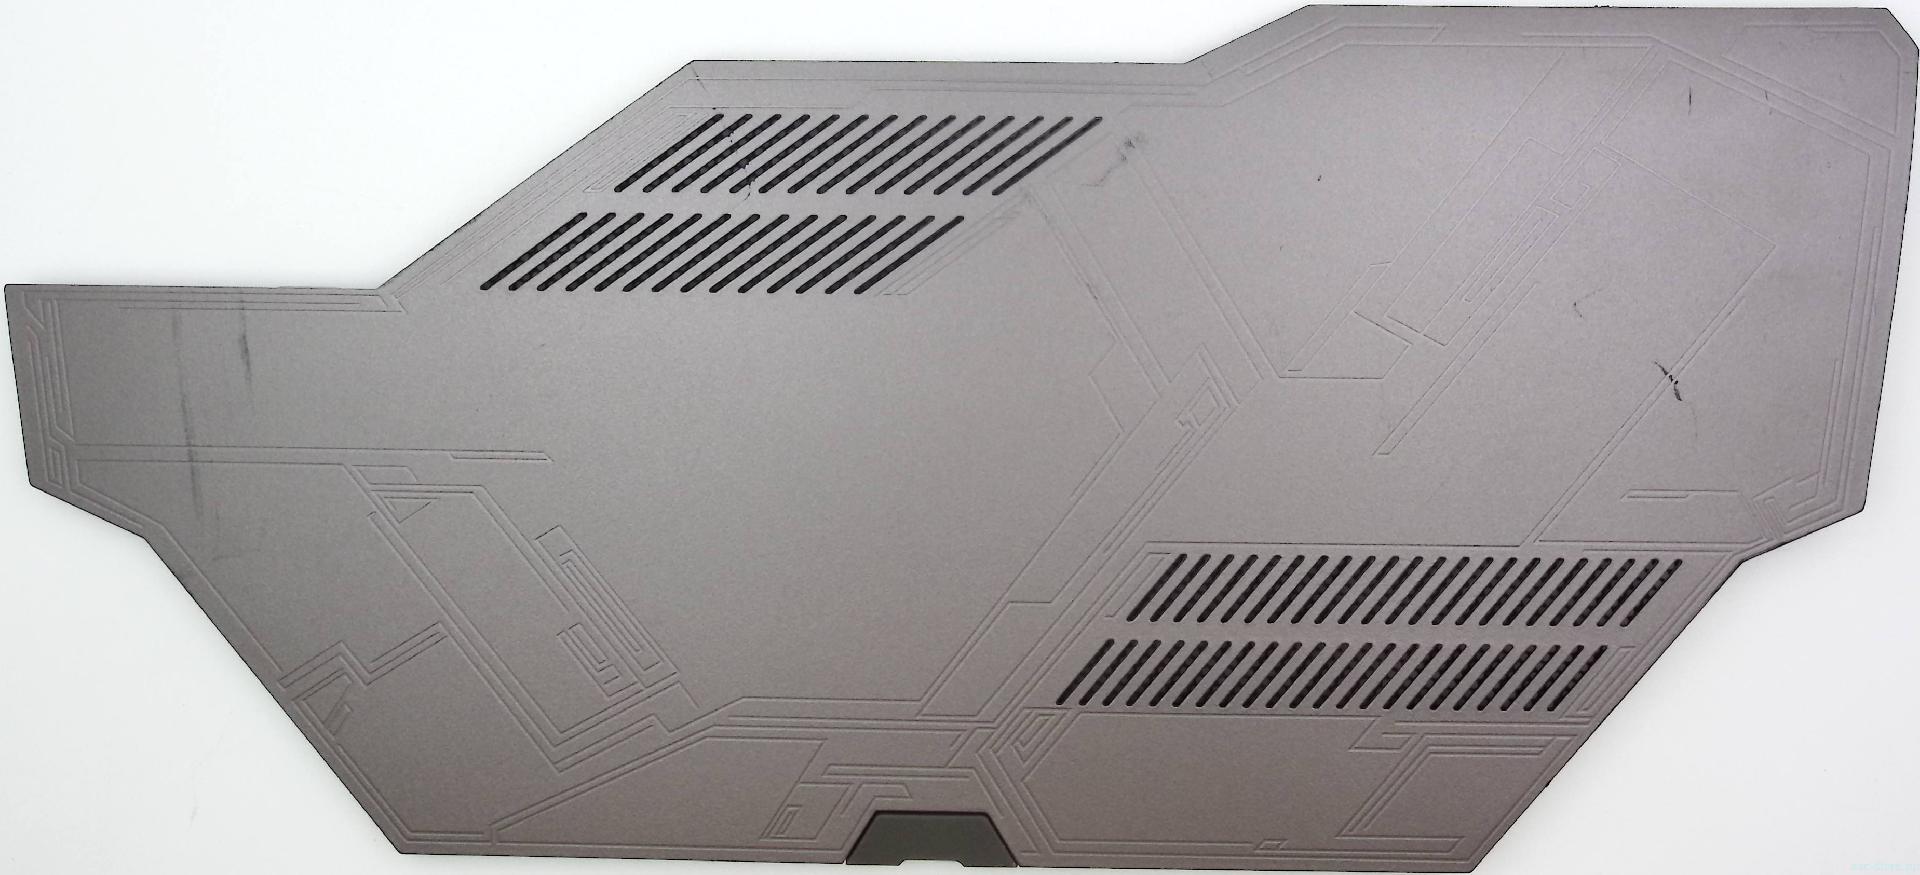 Крышка отсека  нижней части корпуса  ноутбука ASUS G752 G752VX G752VL